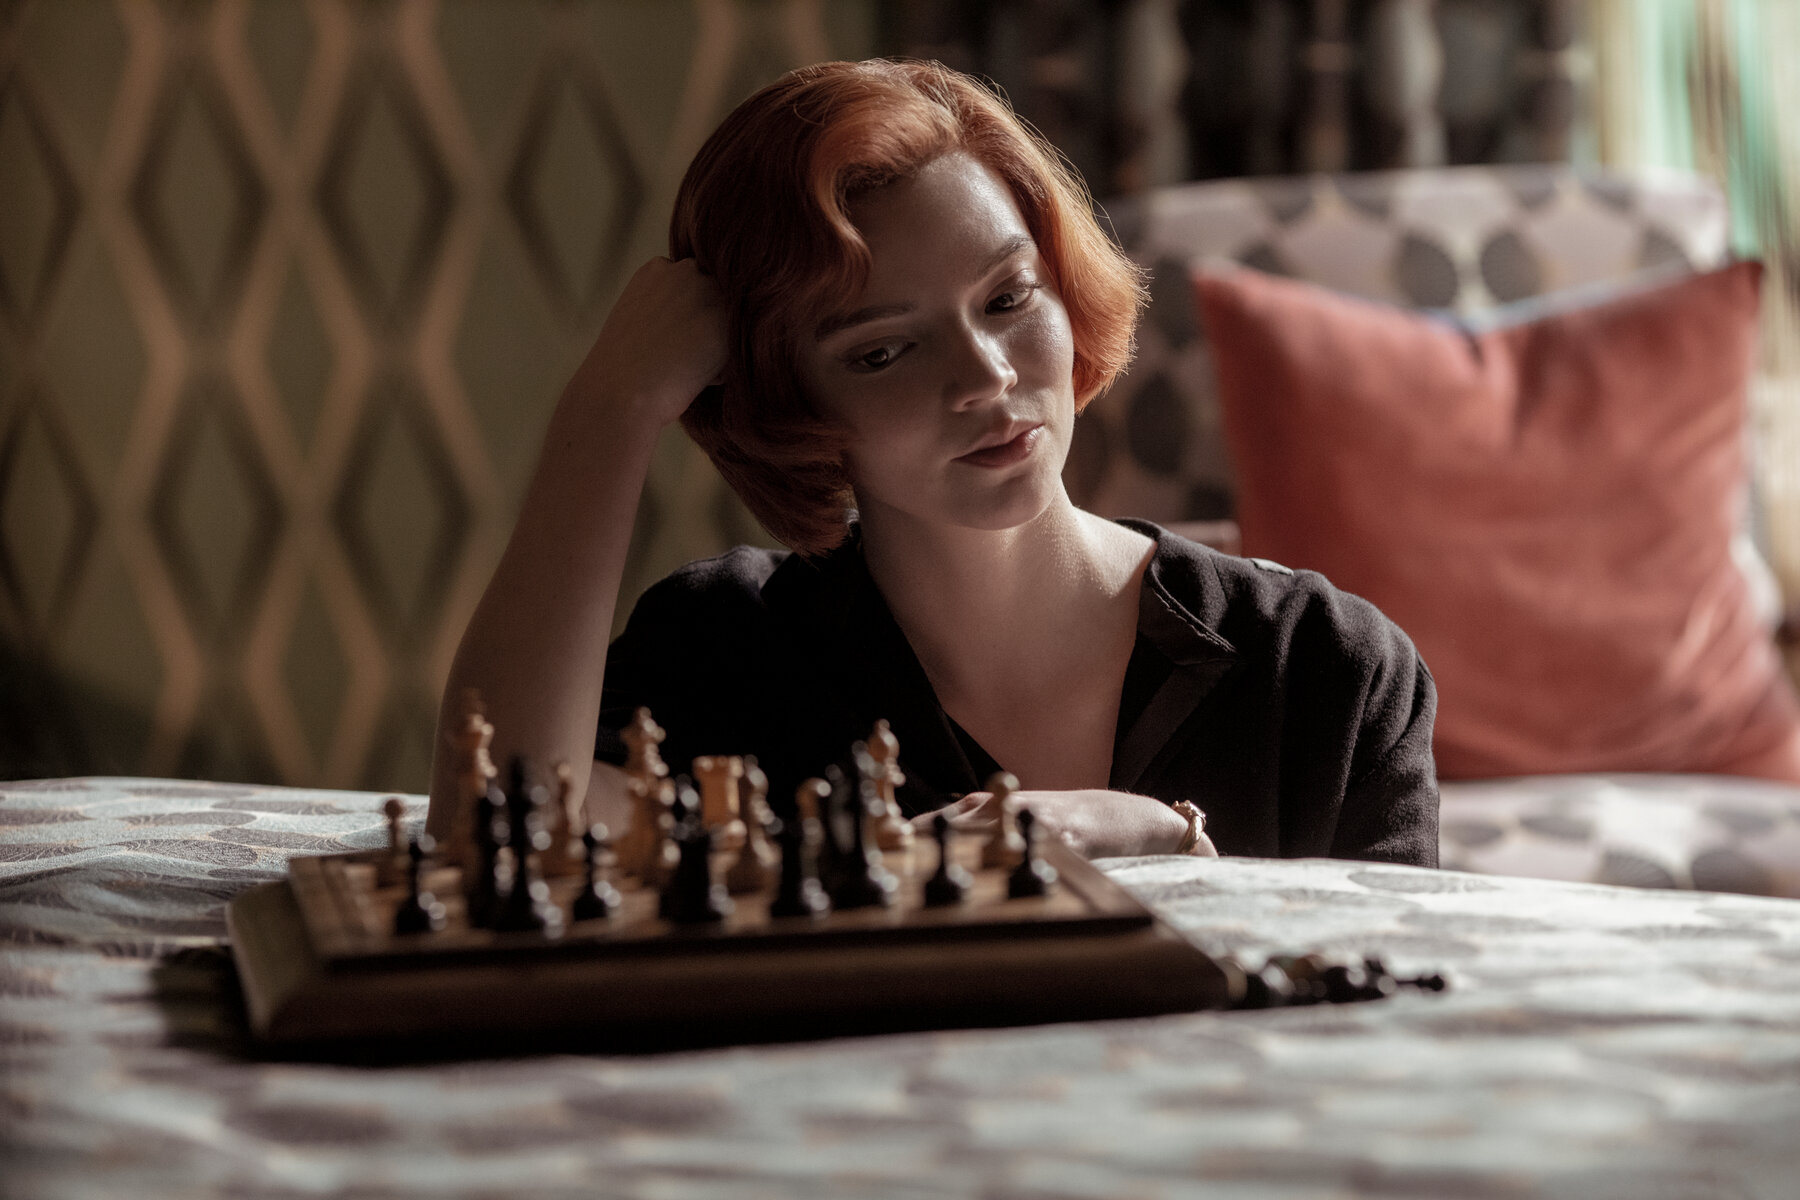 داستان سریال The Queen's Gambit در دهه 1960 گذشته و در مورد یک دختربچه نابغه شطرنج به نام بت هارمون است که در دنیای کاملاً مردانه شطرنج به درجه استاد بزرگی می رسد.